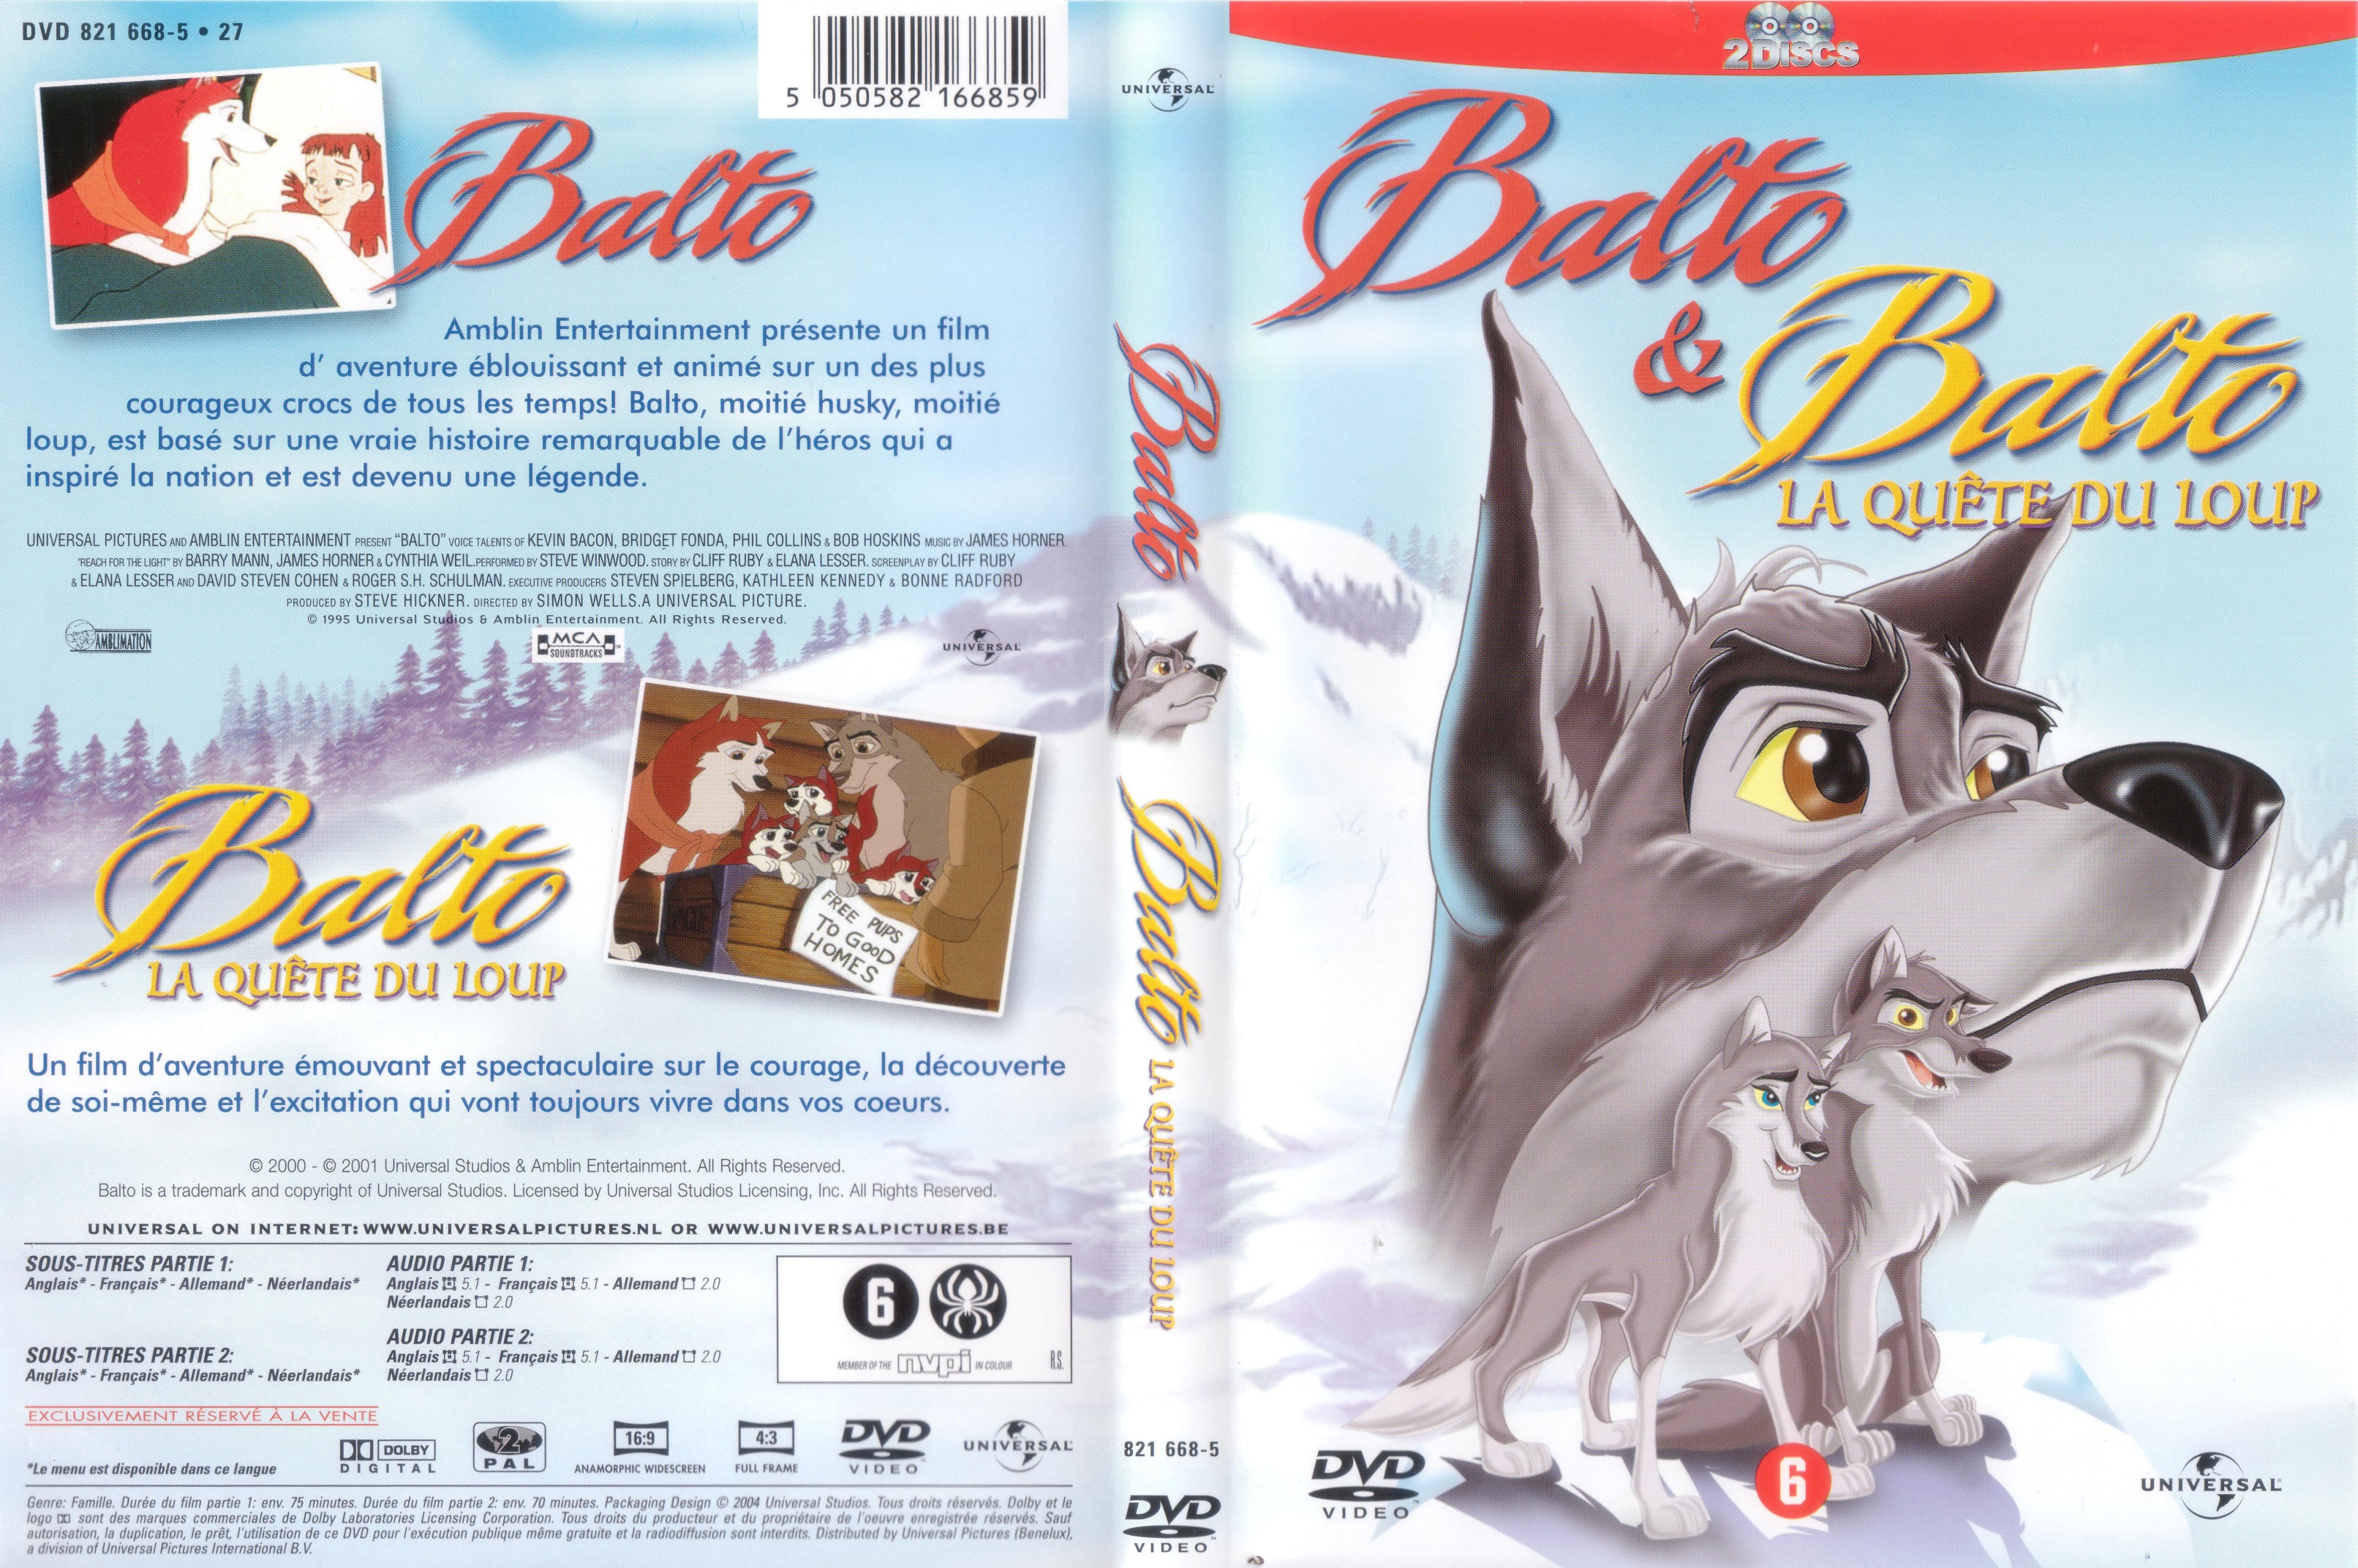 Jaquette DVD Balto et balto la quete du loup